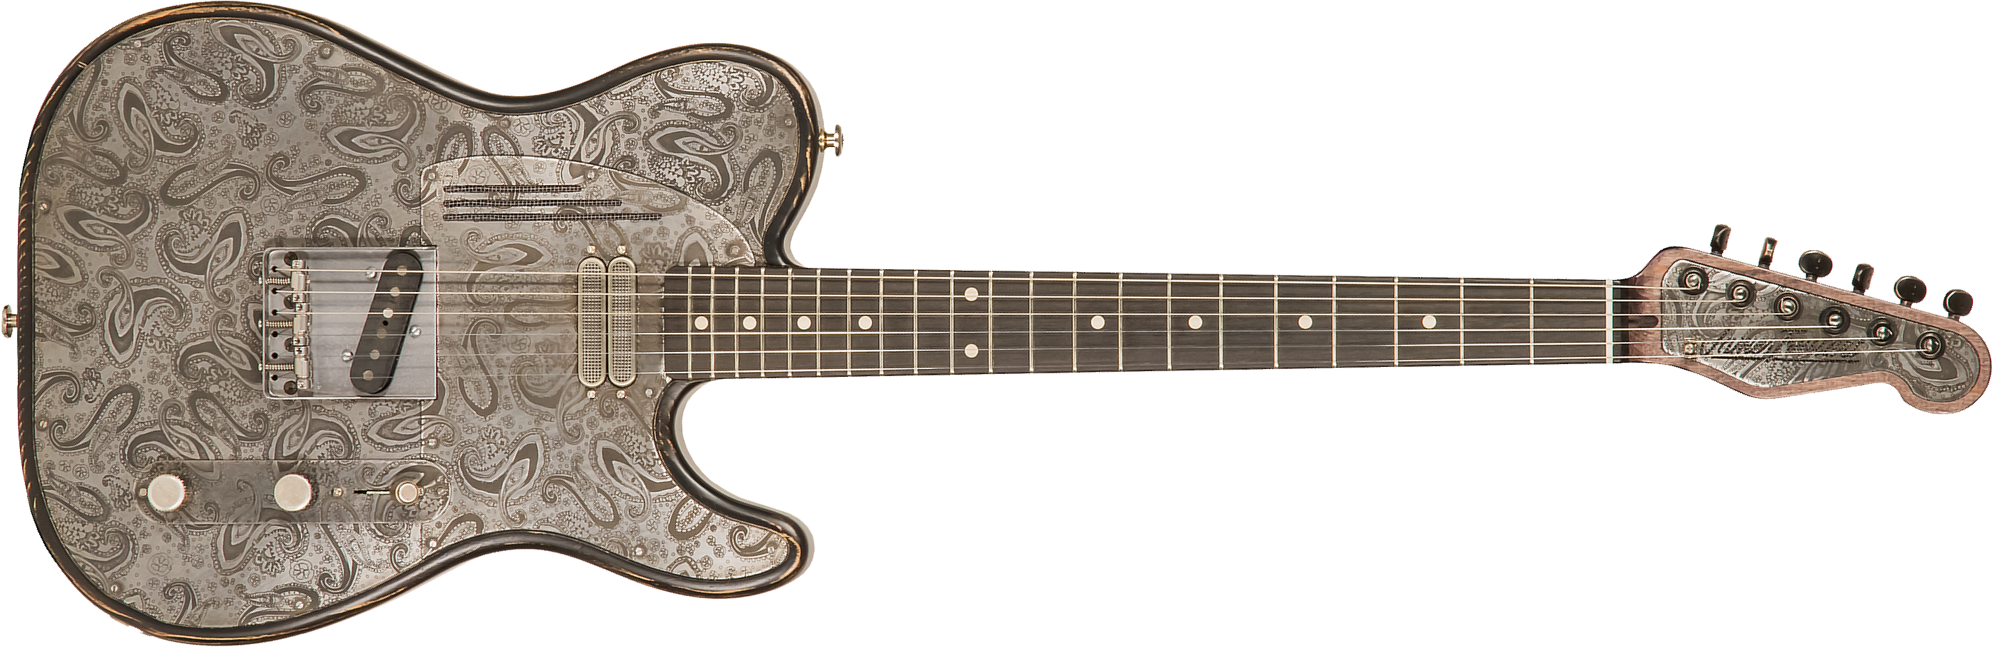 James Trussart Steeltopcaster Sh Ht Eb #21135 - Antique Silver Paisley - Guitarra eléctrica con forma de tel - Main picture